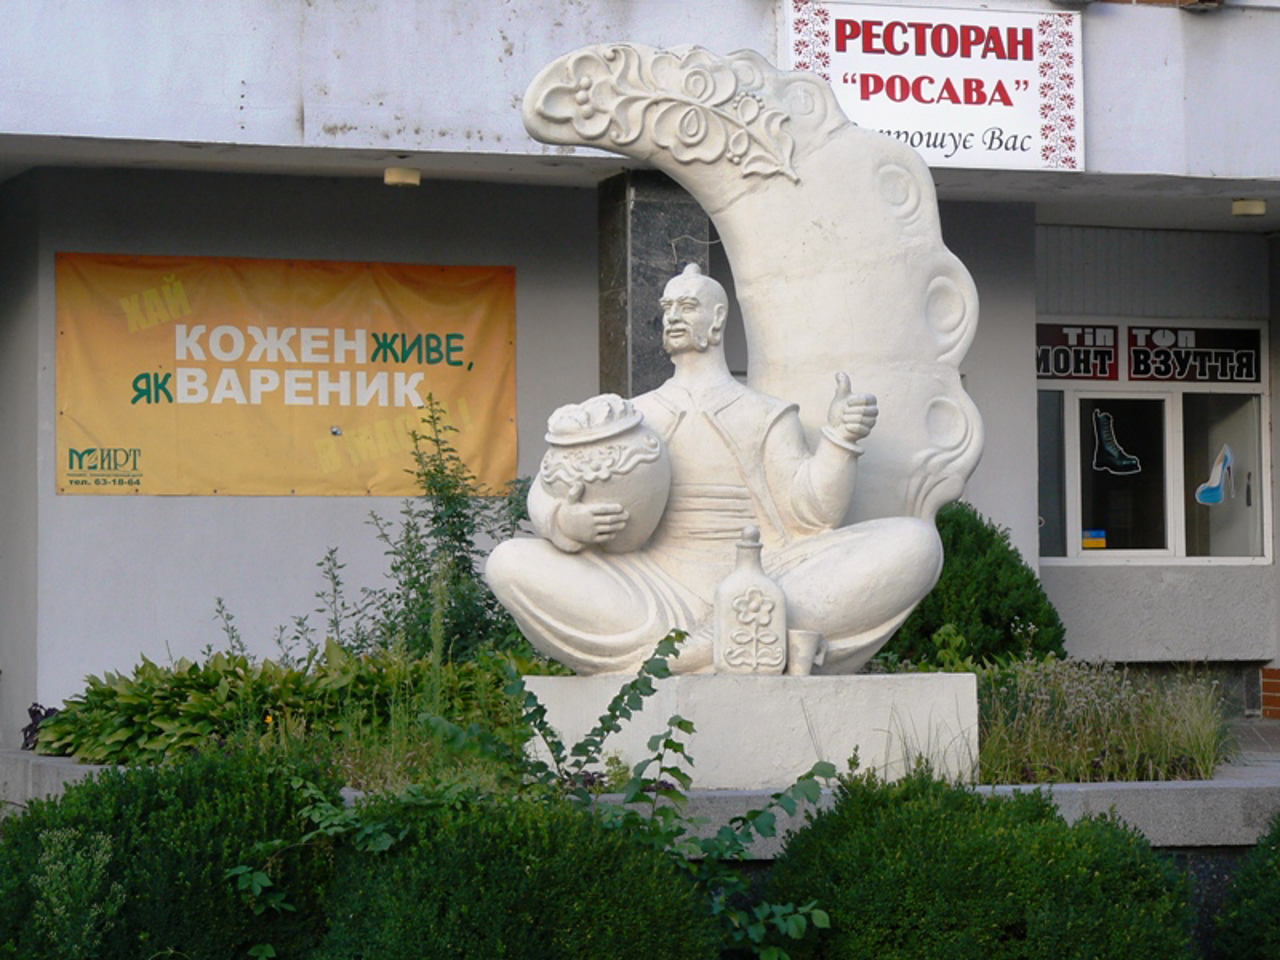 Varenyk Monument, Cherkasy